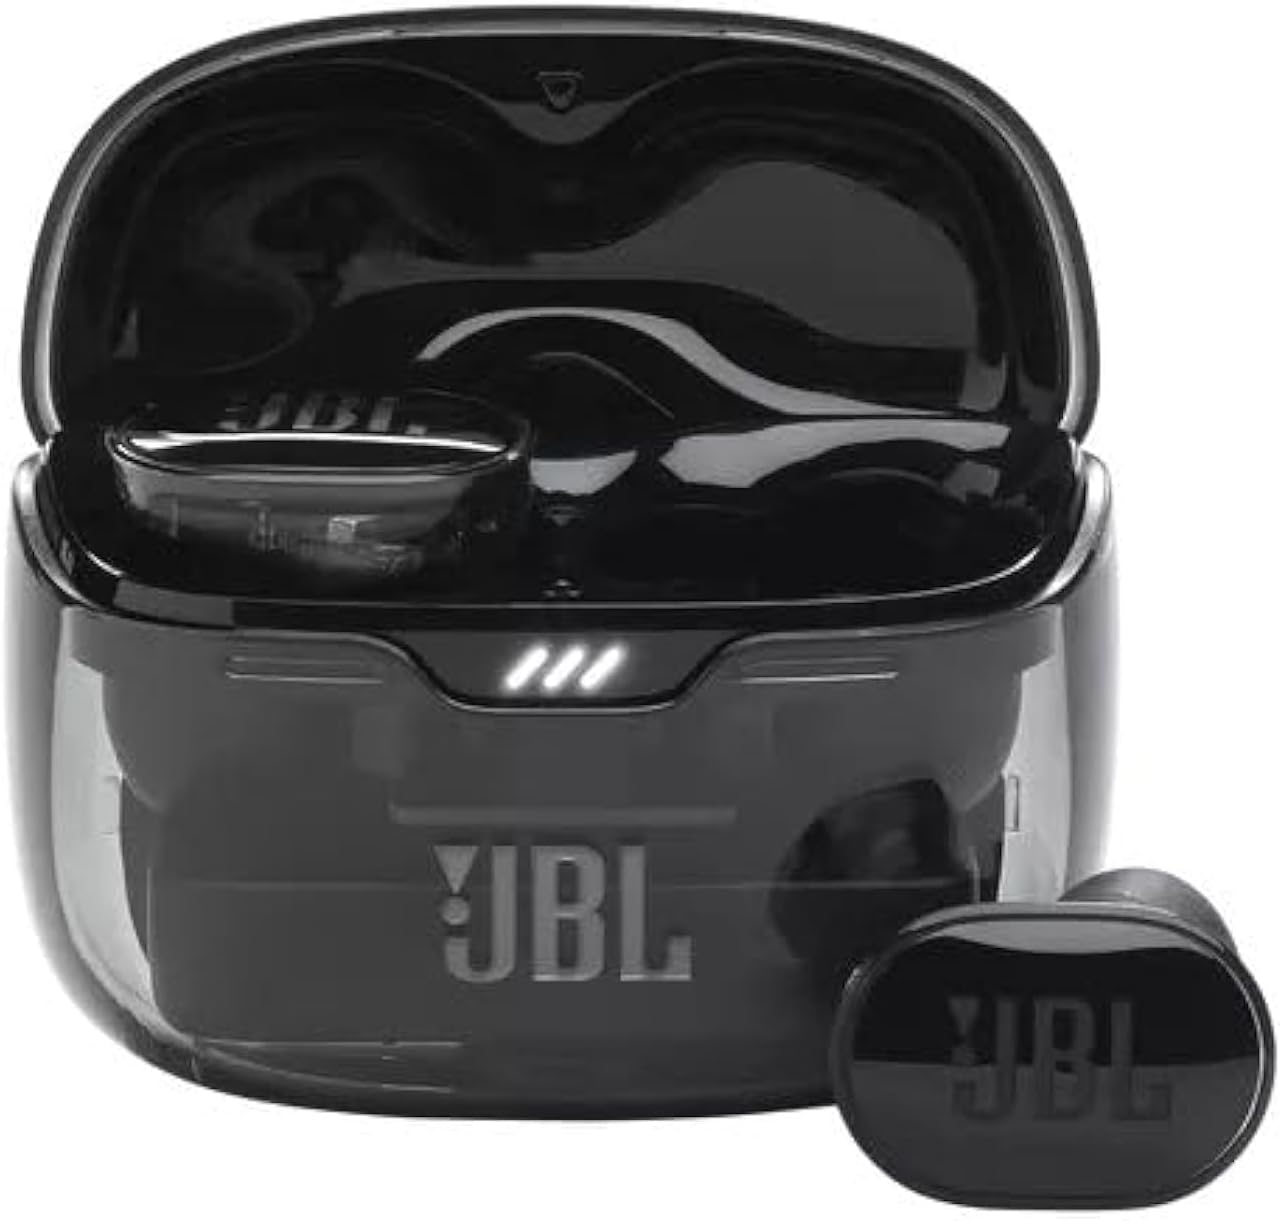 سماعات أذن لاسلكية JBL Wave 200 True مع ميكروفون، وقت تشغيل 20 ساعة، صوت JBL Deep Bass، تقنية الاتصال المزدوج، شحن سريع، تصميم مريح ومريح، دعم المساعد الصوتي للهواتف المحمولة (أسود)